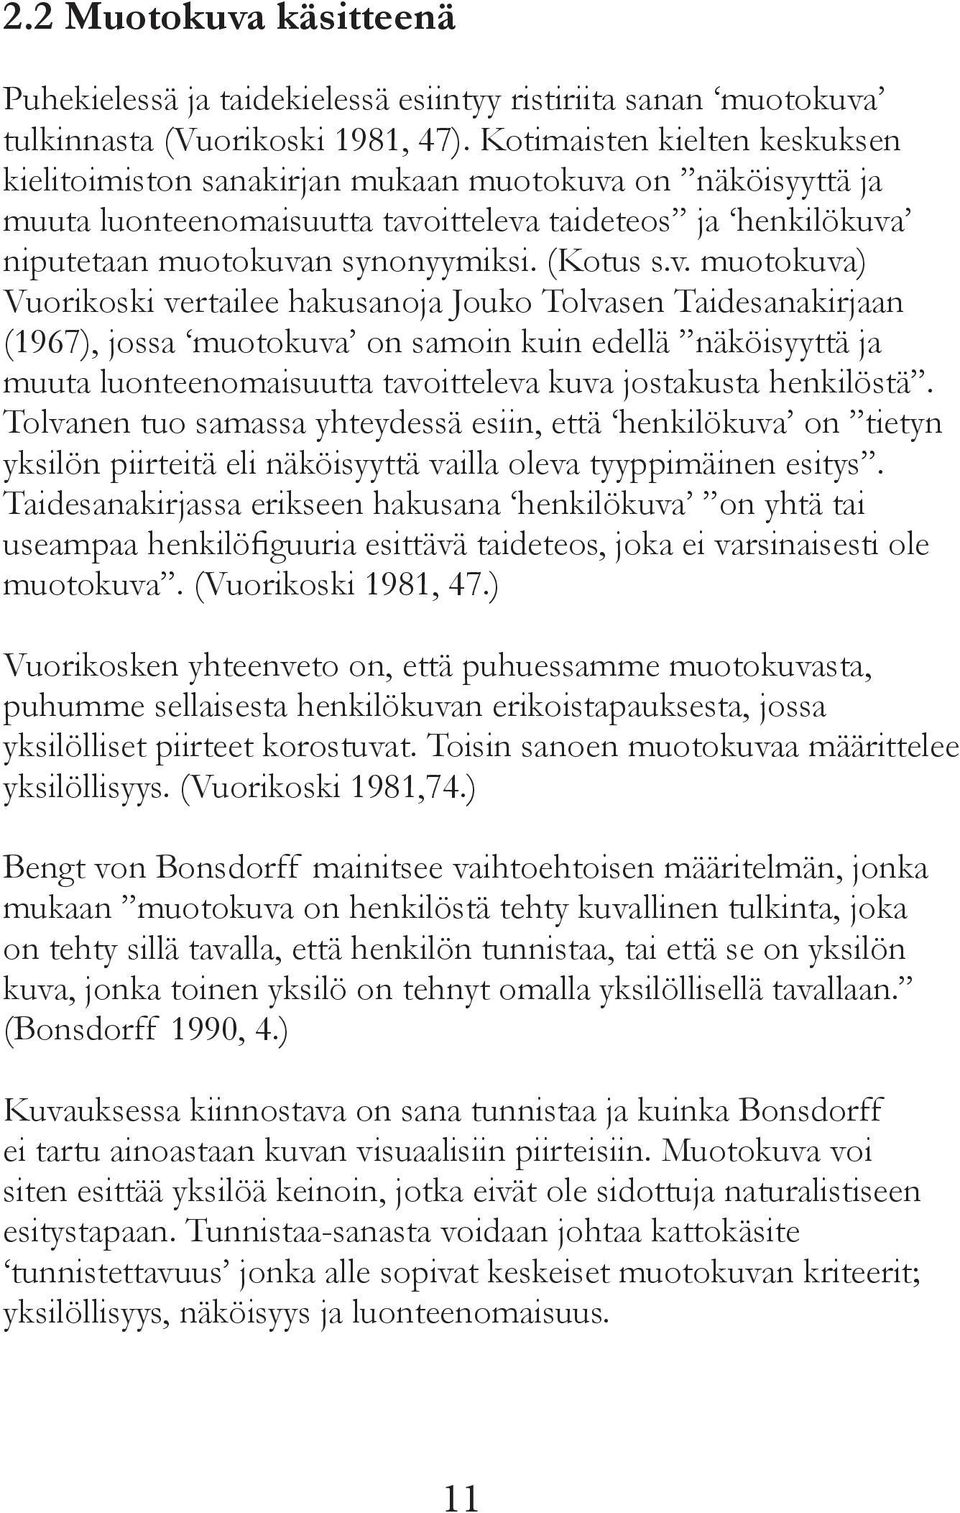 v. muotokuva) Vuorikoski vertailee hakusanoja Jouko Tolvasen Taidesanakirjaan (1967), jossa muotokuva on samoin kuin edellä näköisyyttä ja muuta luonteenomaisuutta tavoitteleva kuva jostakusta